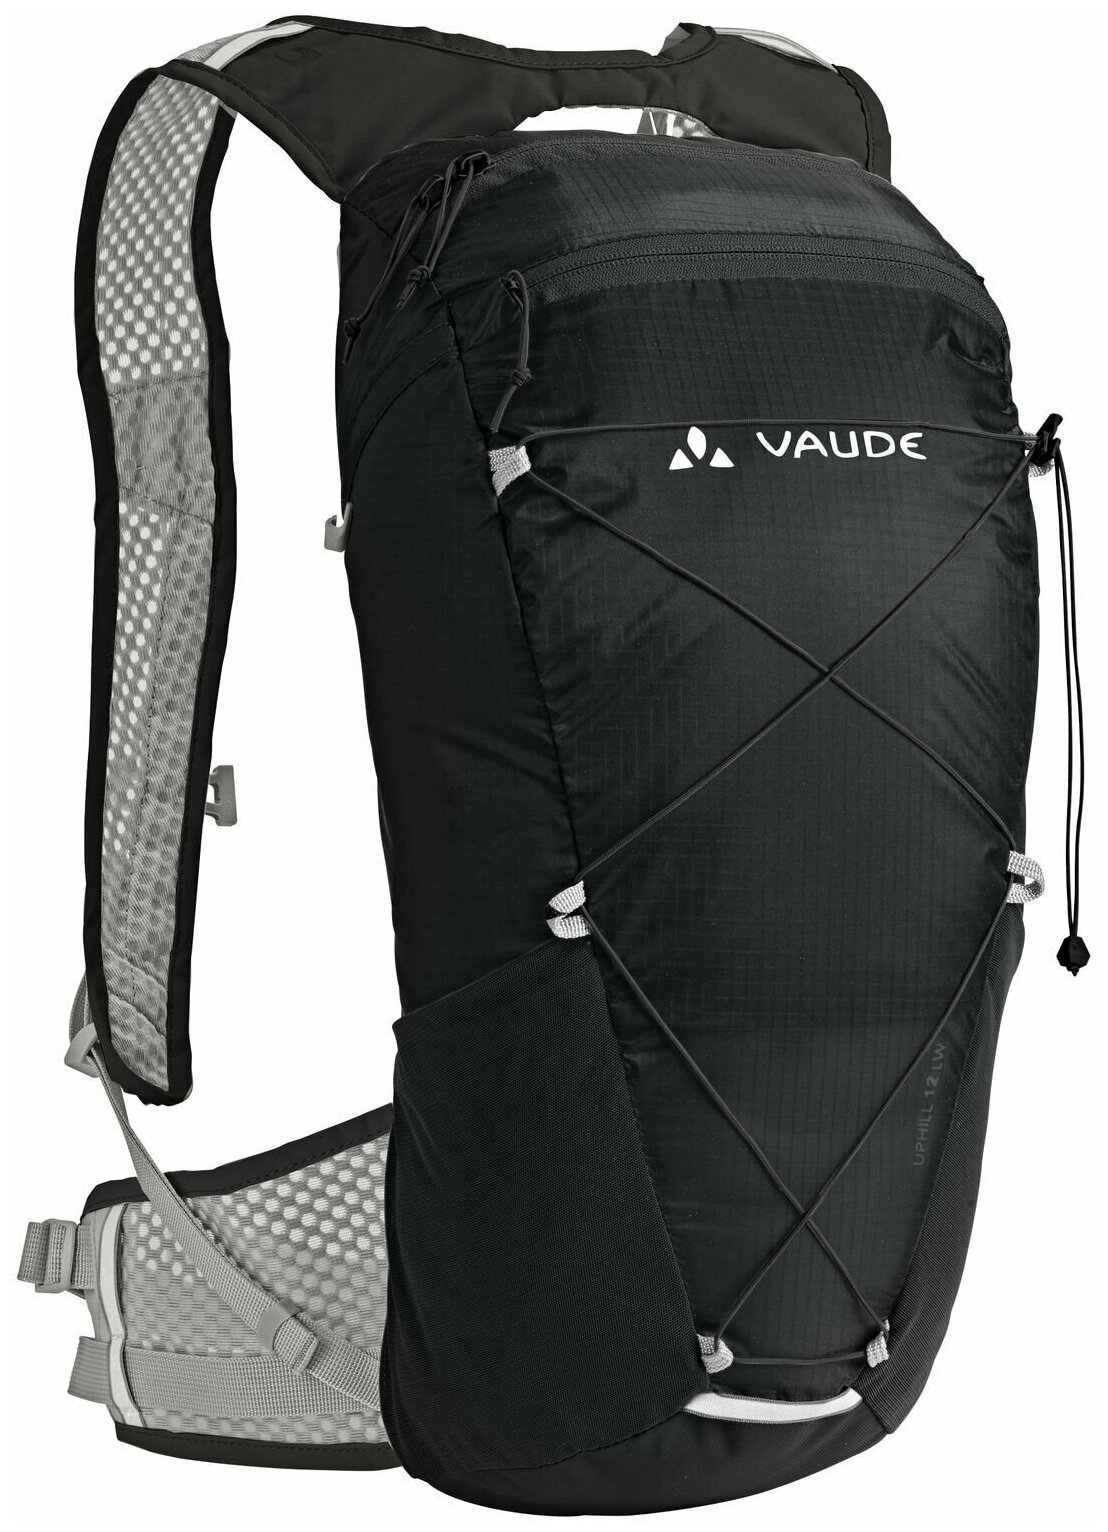 Велорюкзак Vaude Uphill 12 LW рюкзак (010, black)